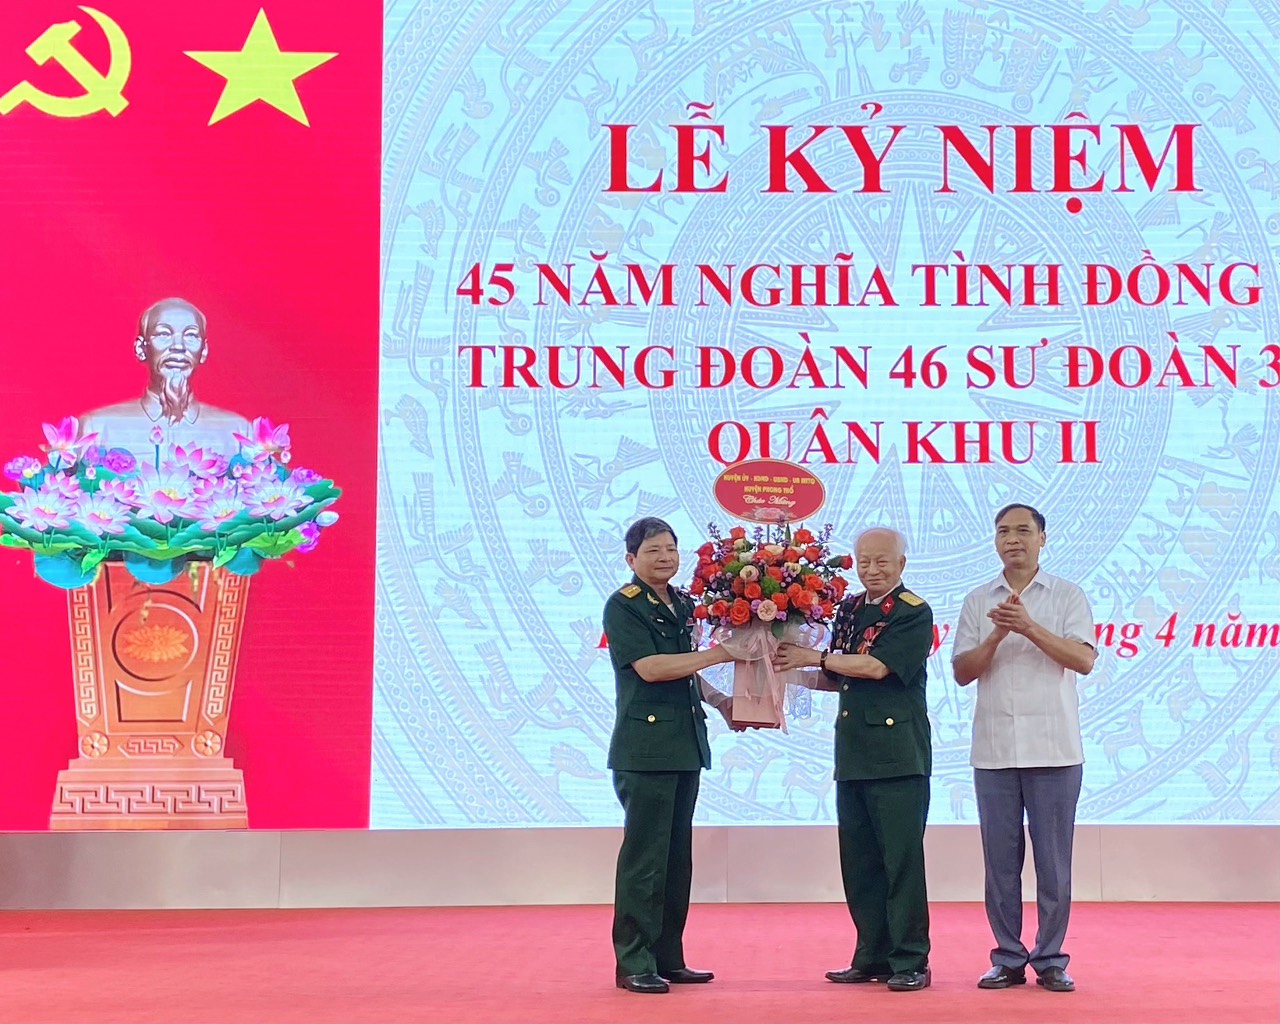 Đồng chí Nguyễn Văn Thanh - Phó bí thư Thường trực Huyện ủy Phong Thổ tặng hoa động viên cựu quân nhân Trung đoàn 46.